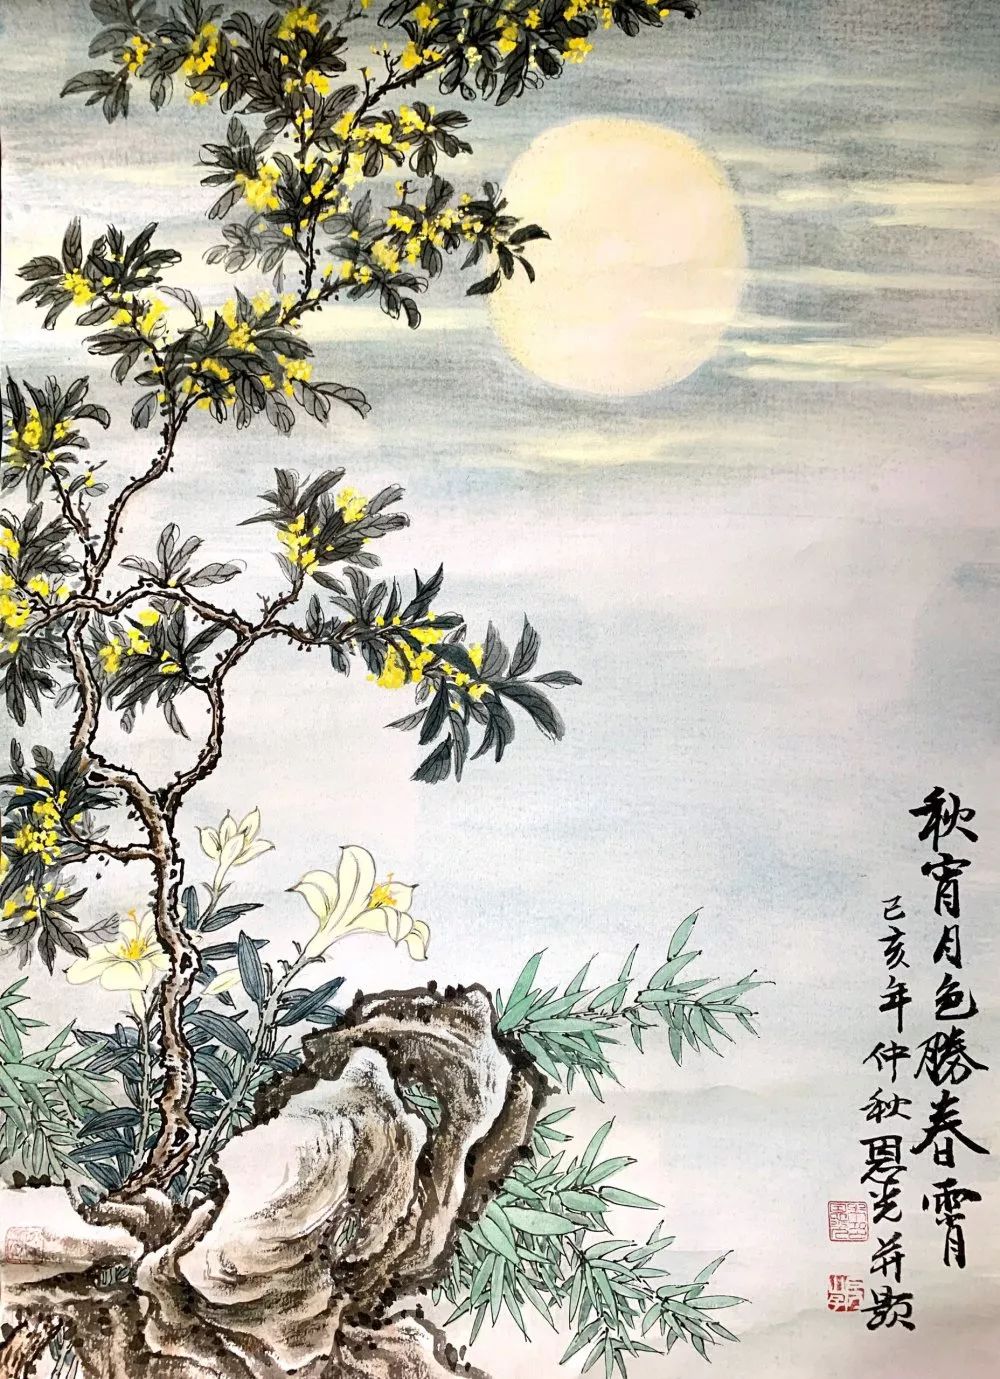 国画中秋节写意画法图片